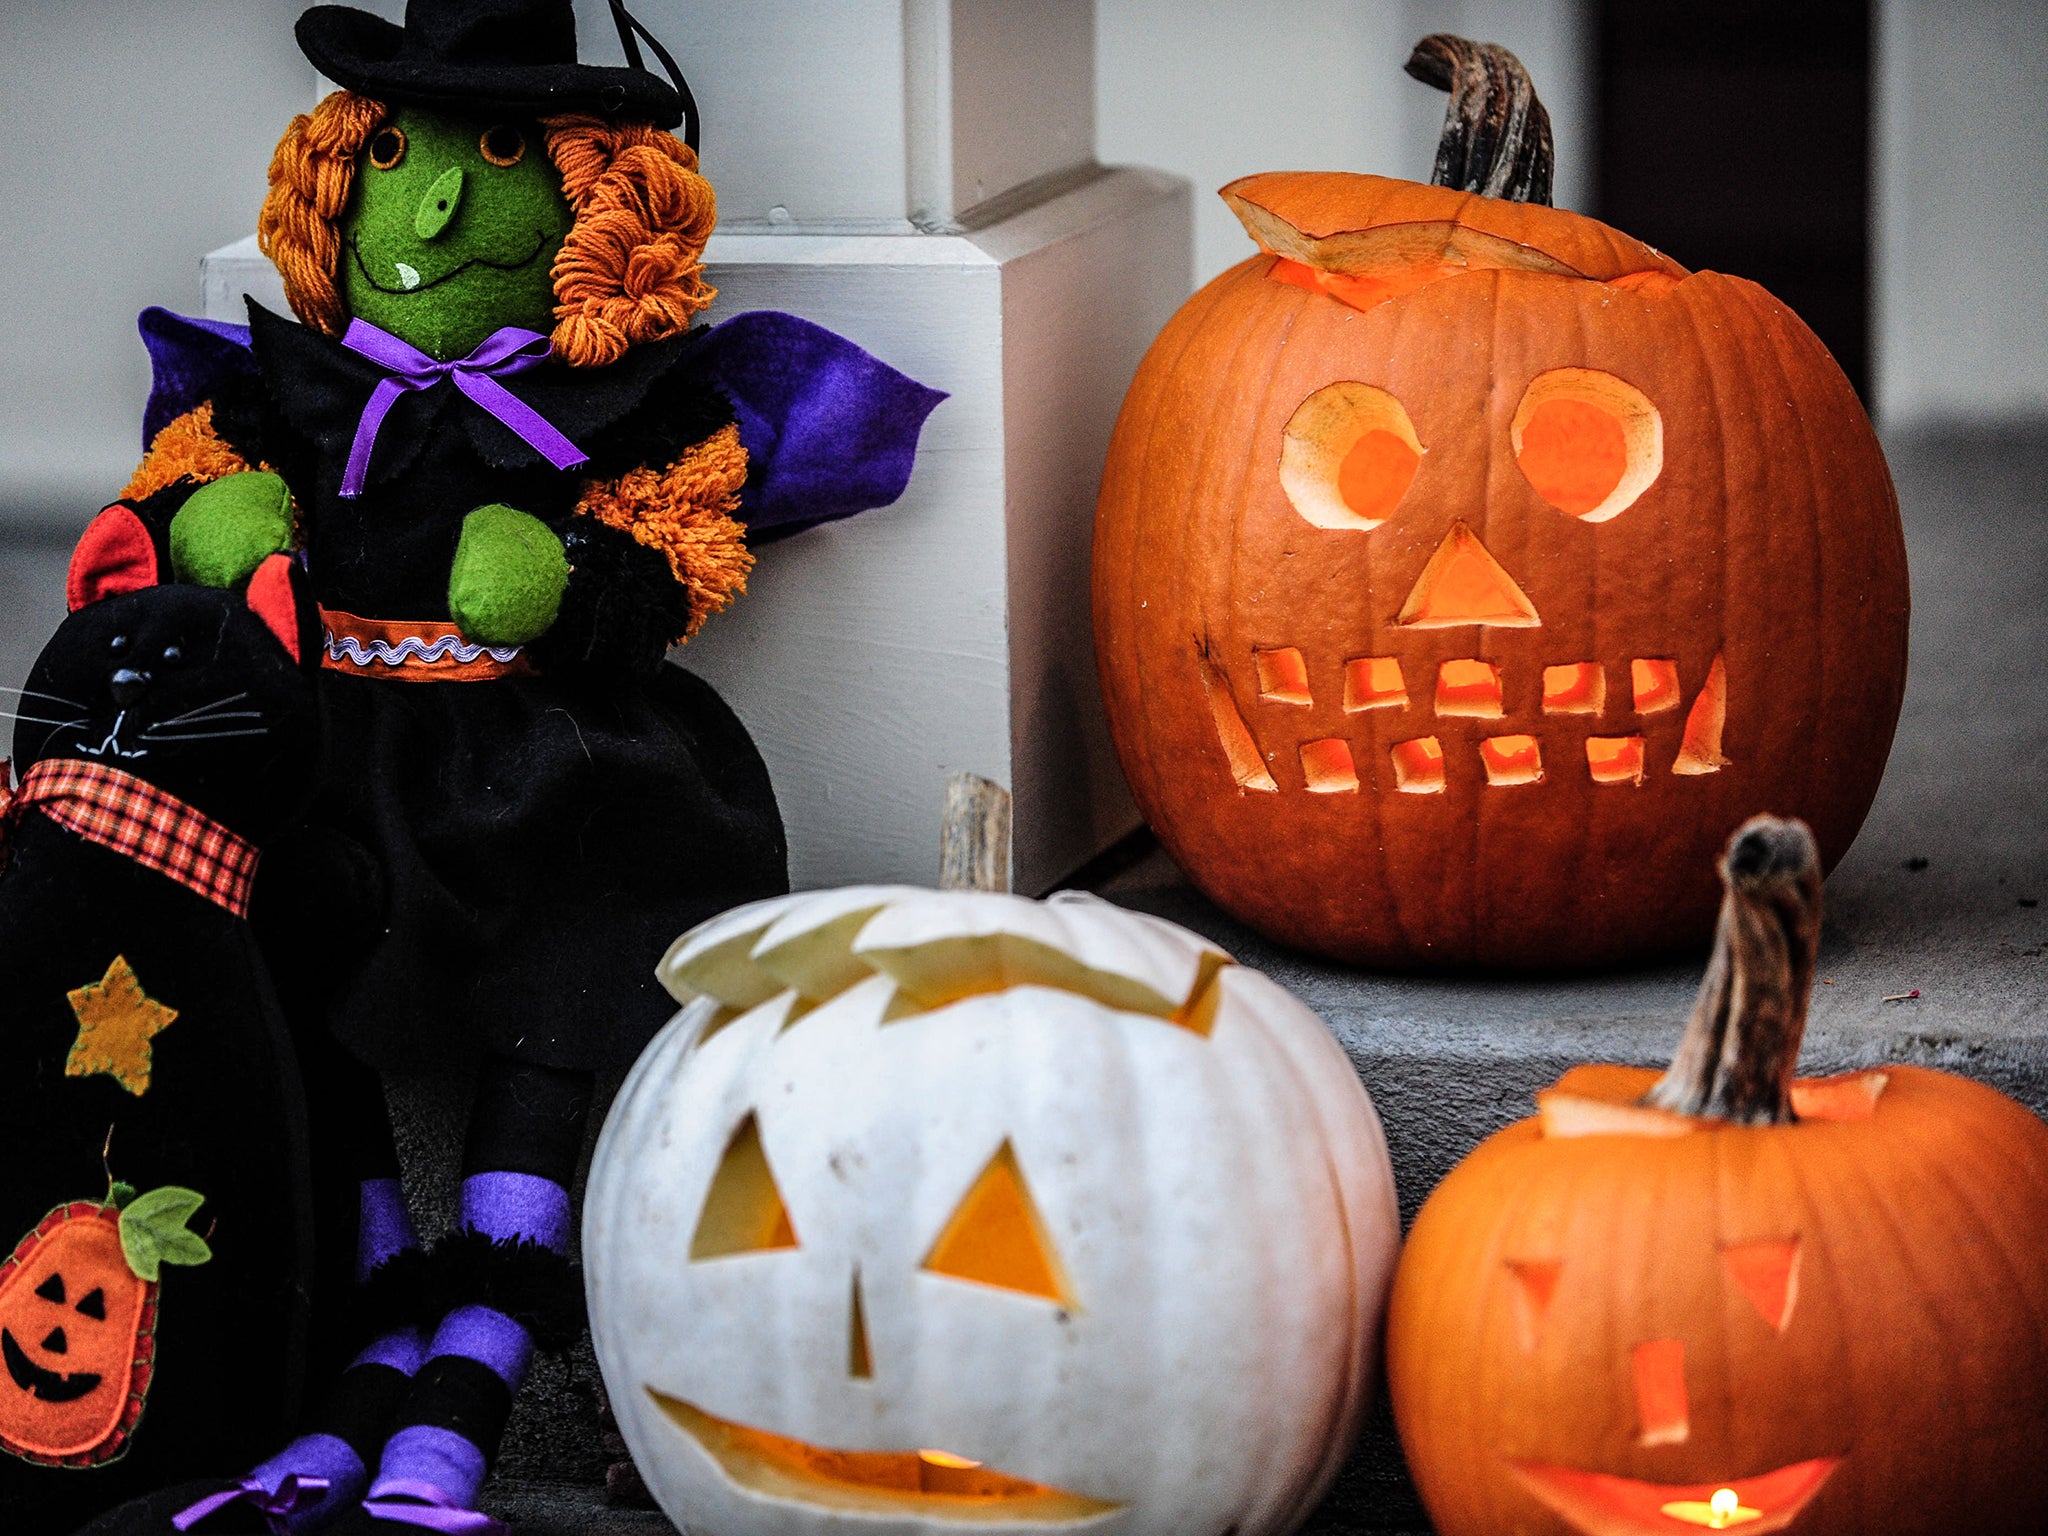 Halloween helped boost supermarket sales in October